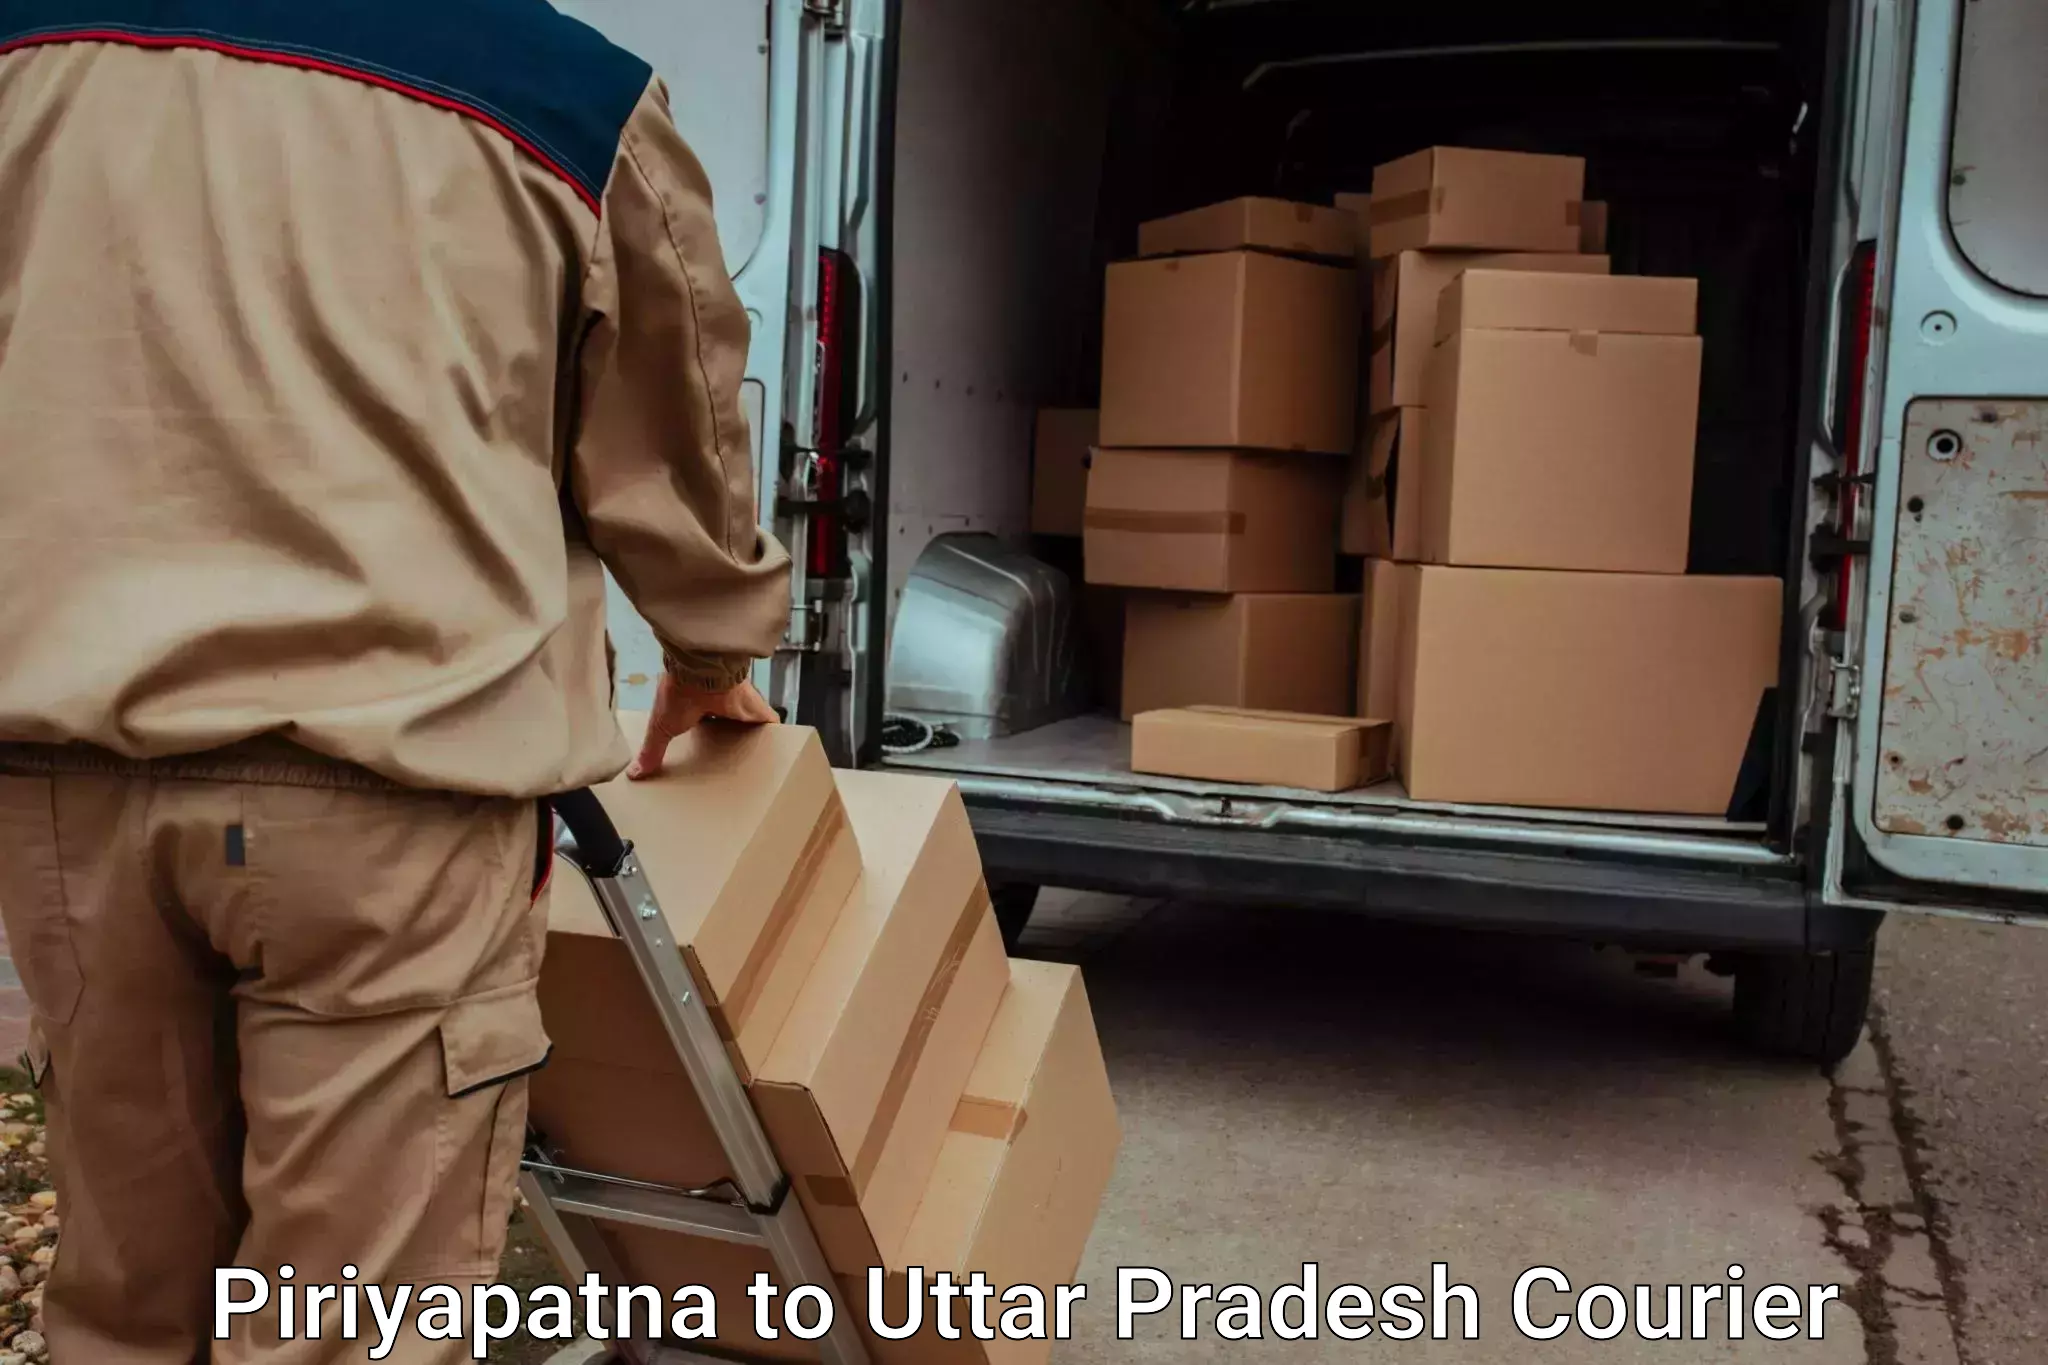 Residential moving experts Piriyapatna to Anpara